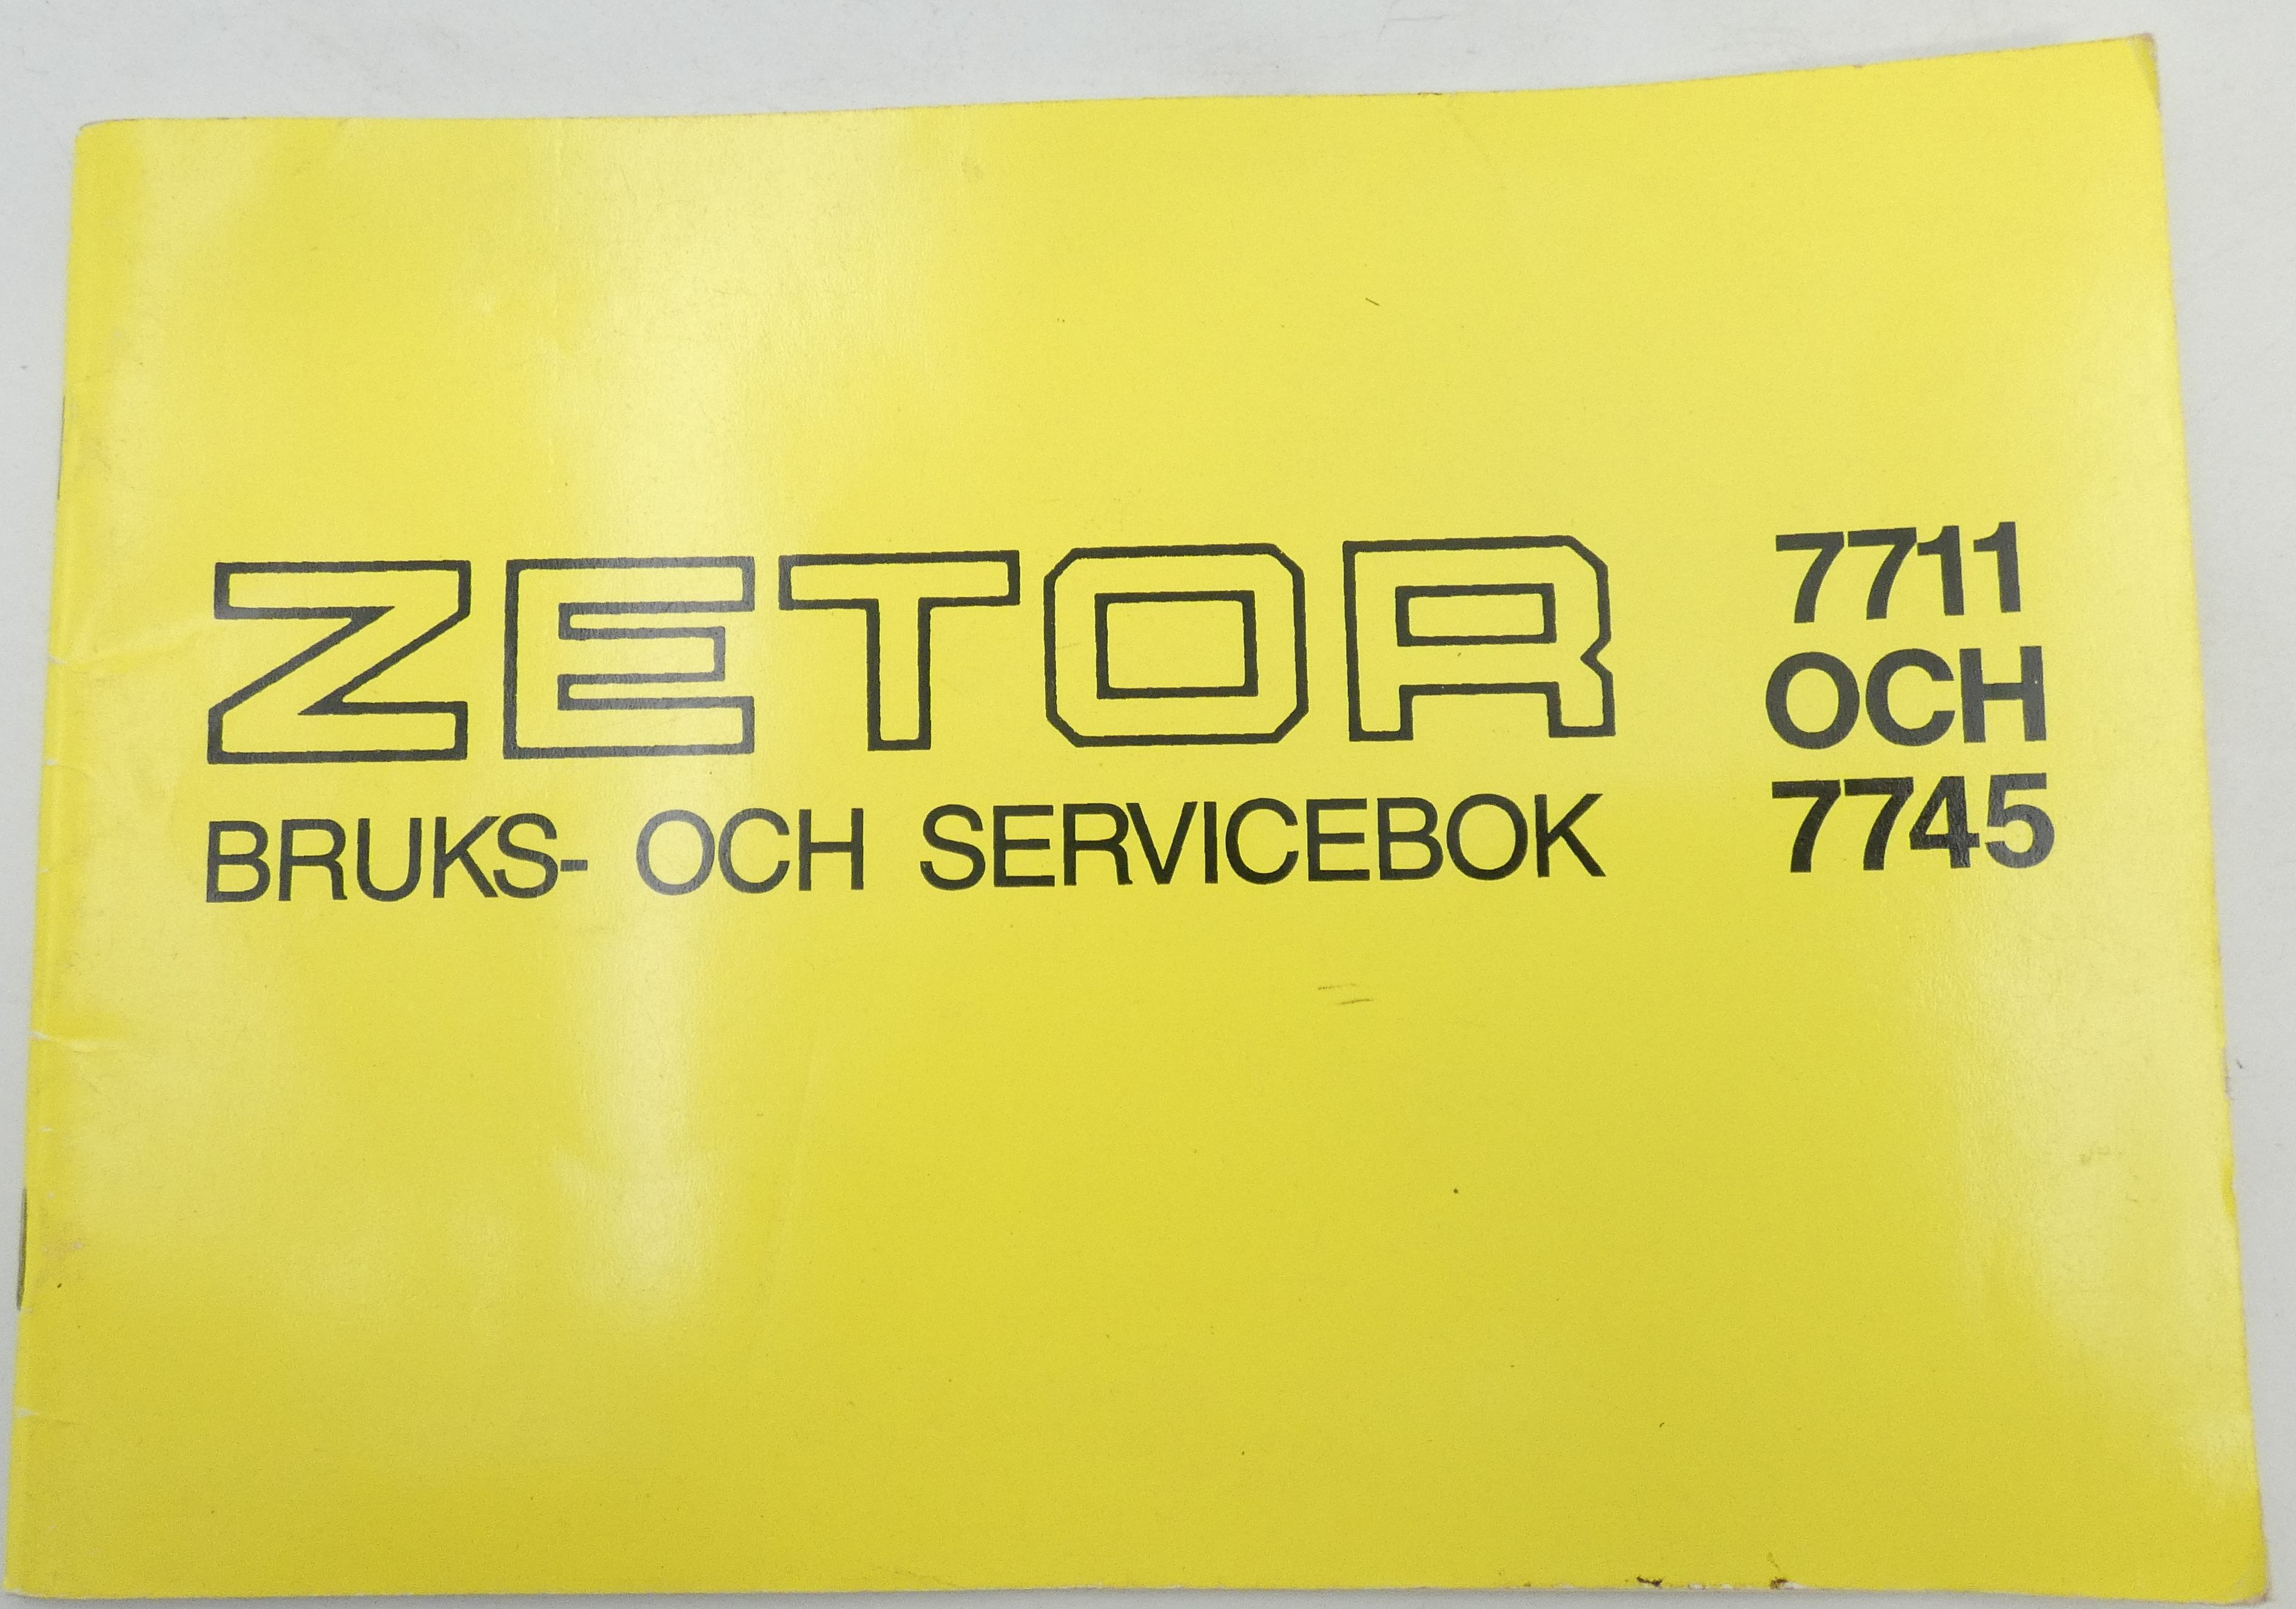 Zetor 7711 och 7745 bruks och servicebok